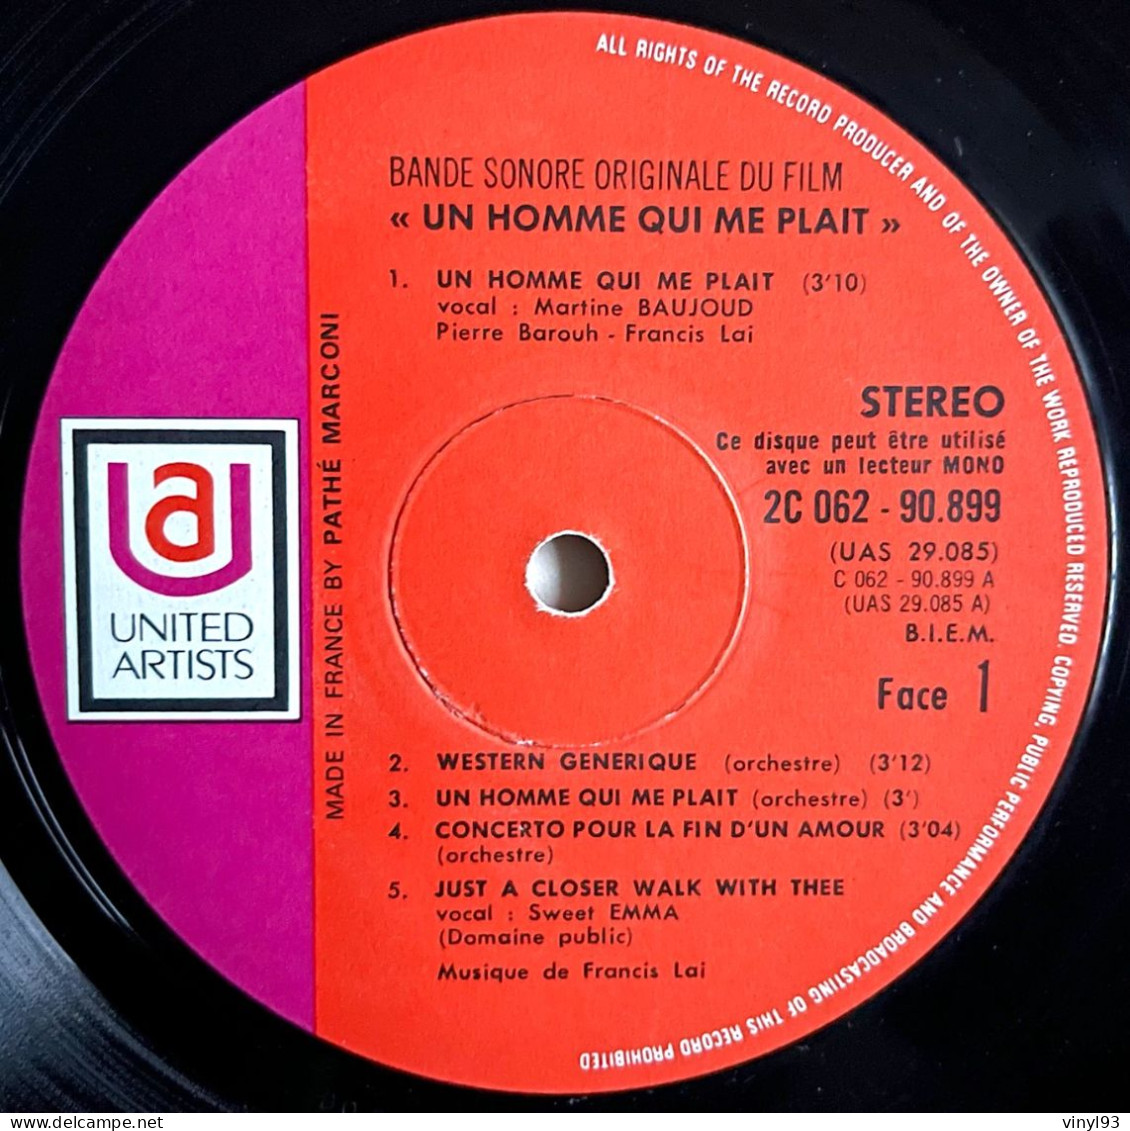 1969 - Bande Originale Du Film De Claude Lelouch "Un Homme Qui Me Plait" Avec Belmondo - LP 33T - United Artists - Música De Peliculas